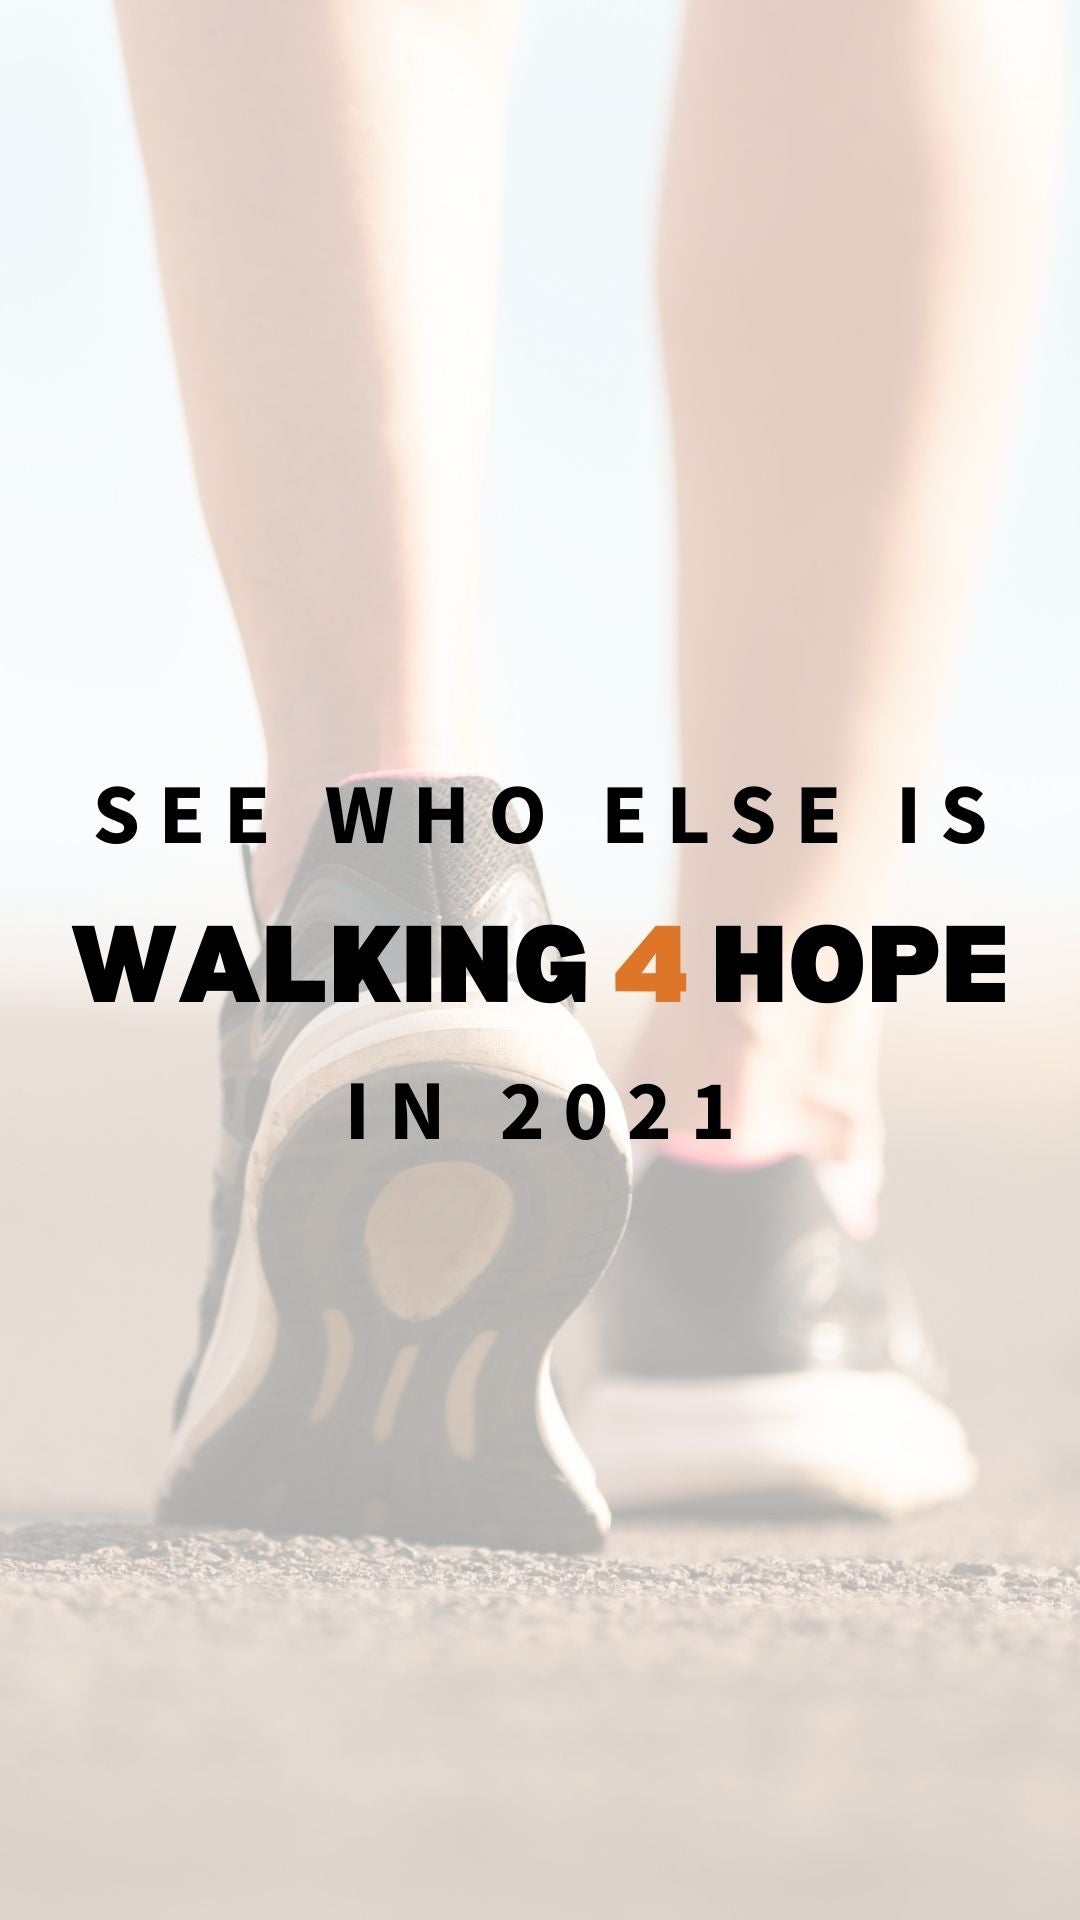 See who else is walking 4 hope in 2021